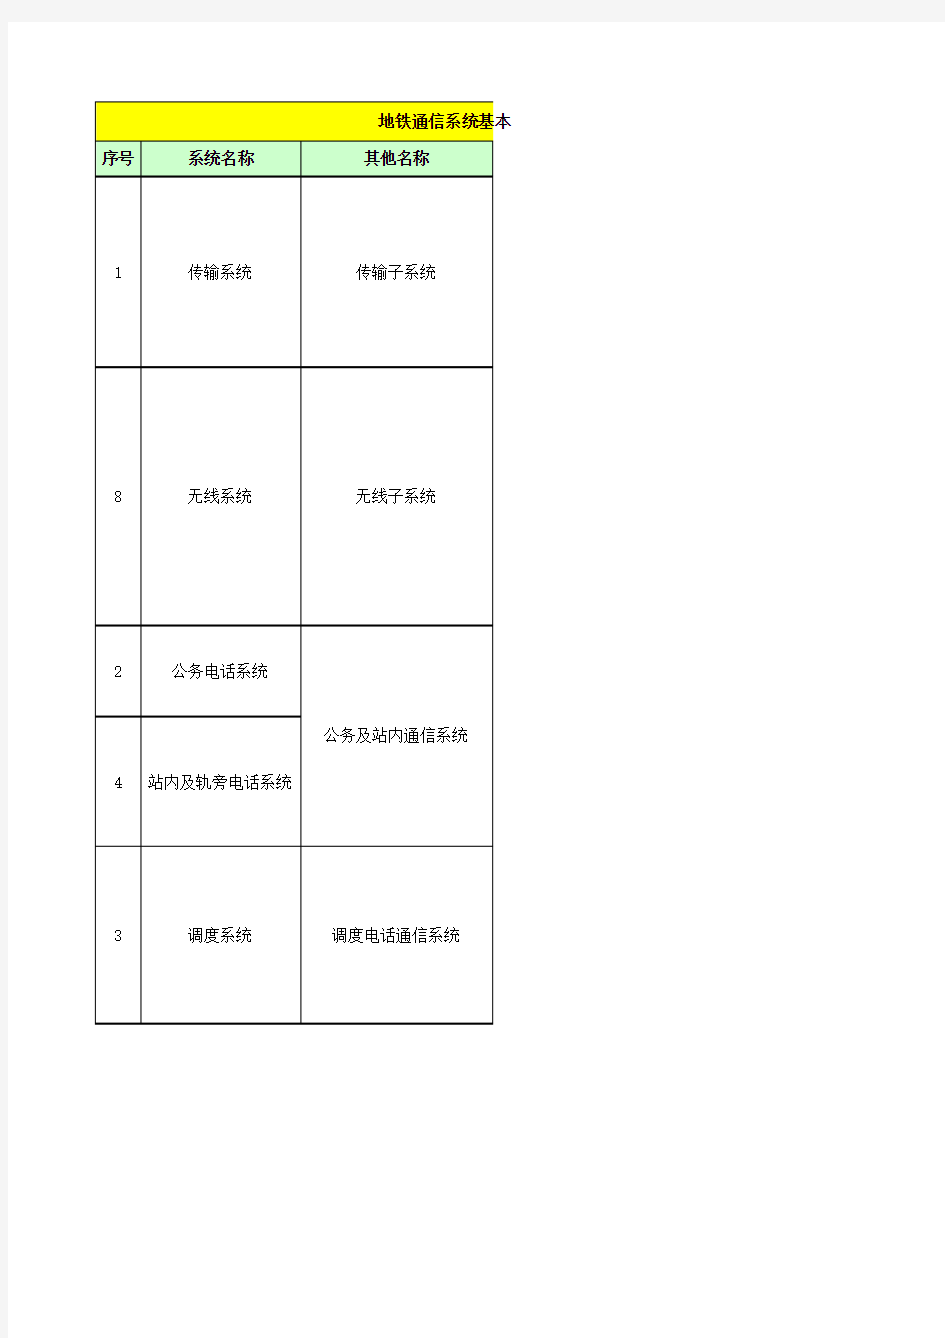 广州地铁通信系统构成及招标结构